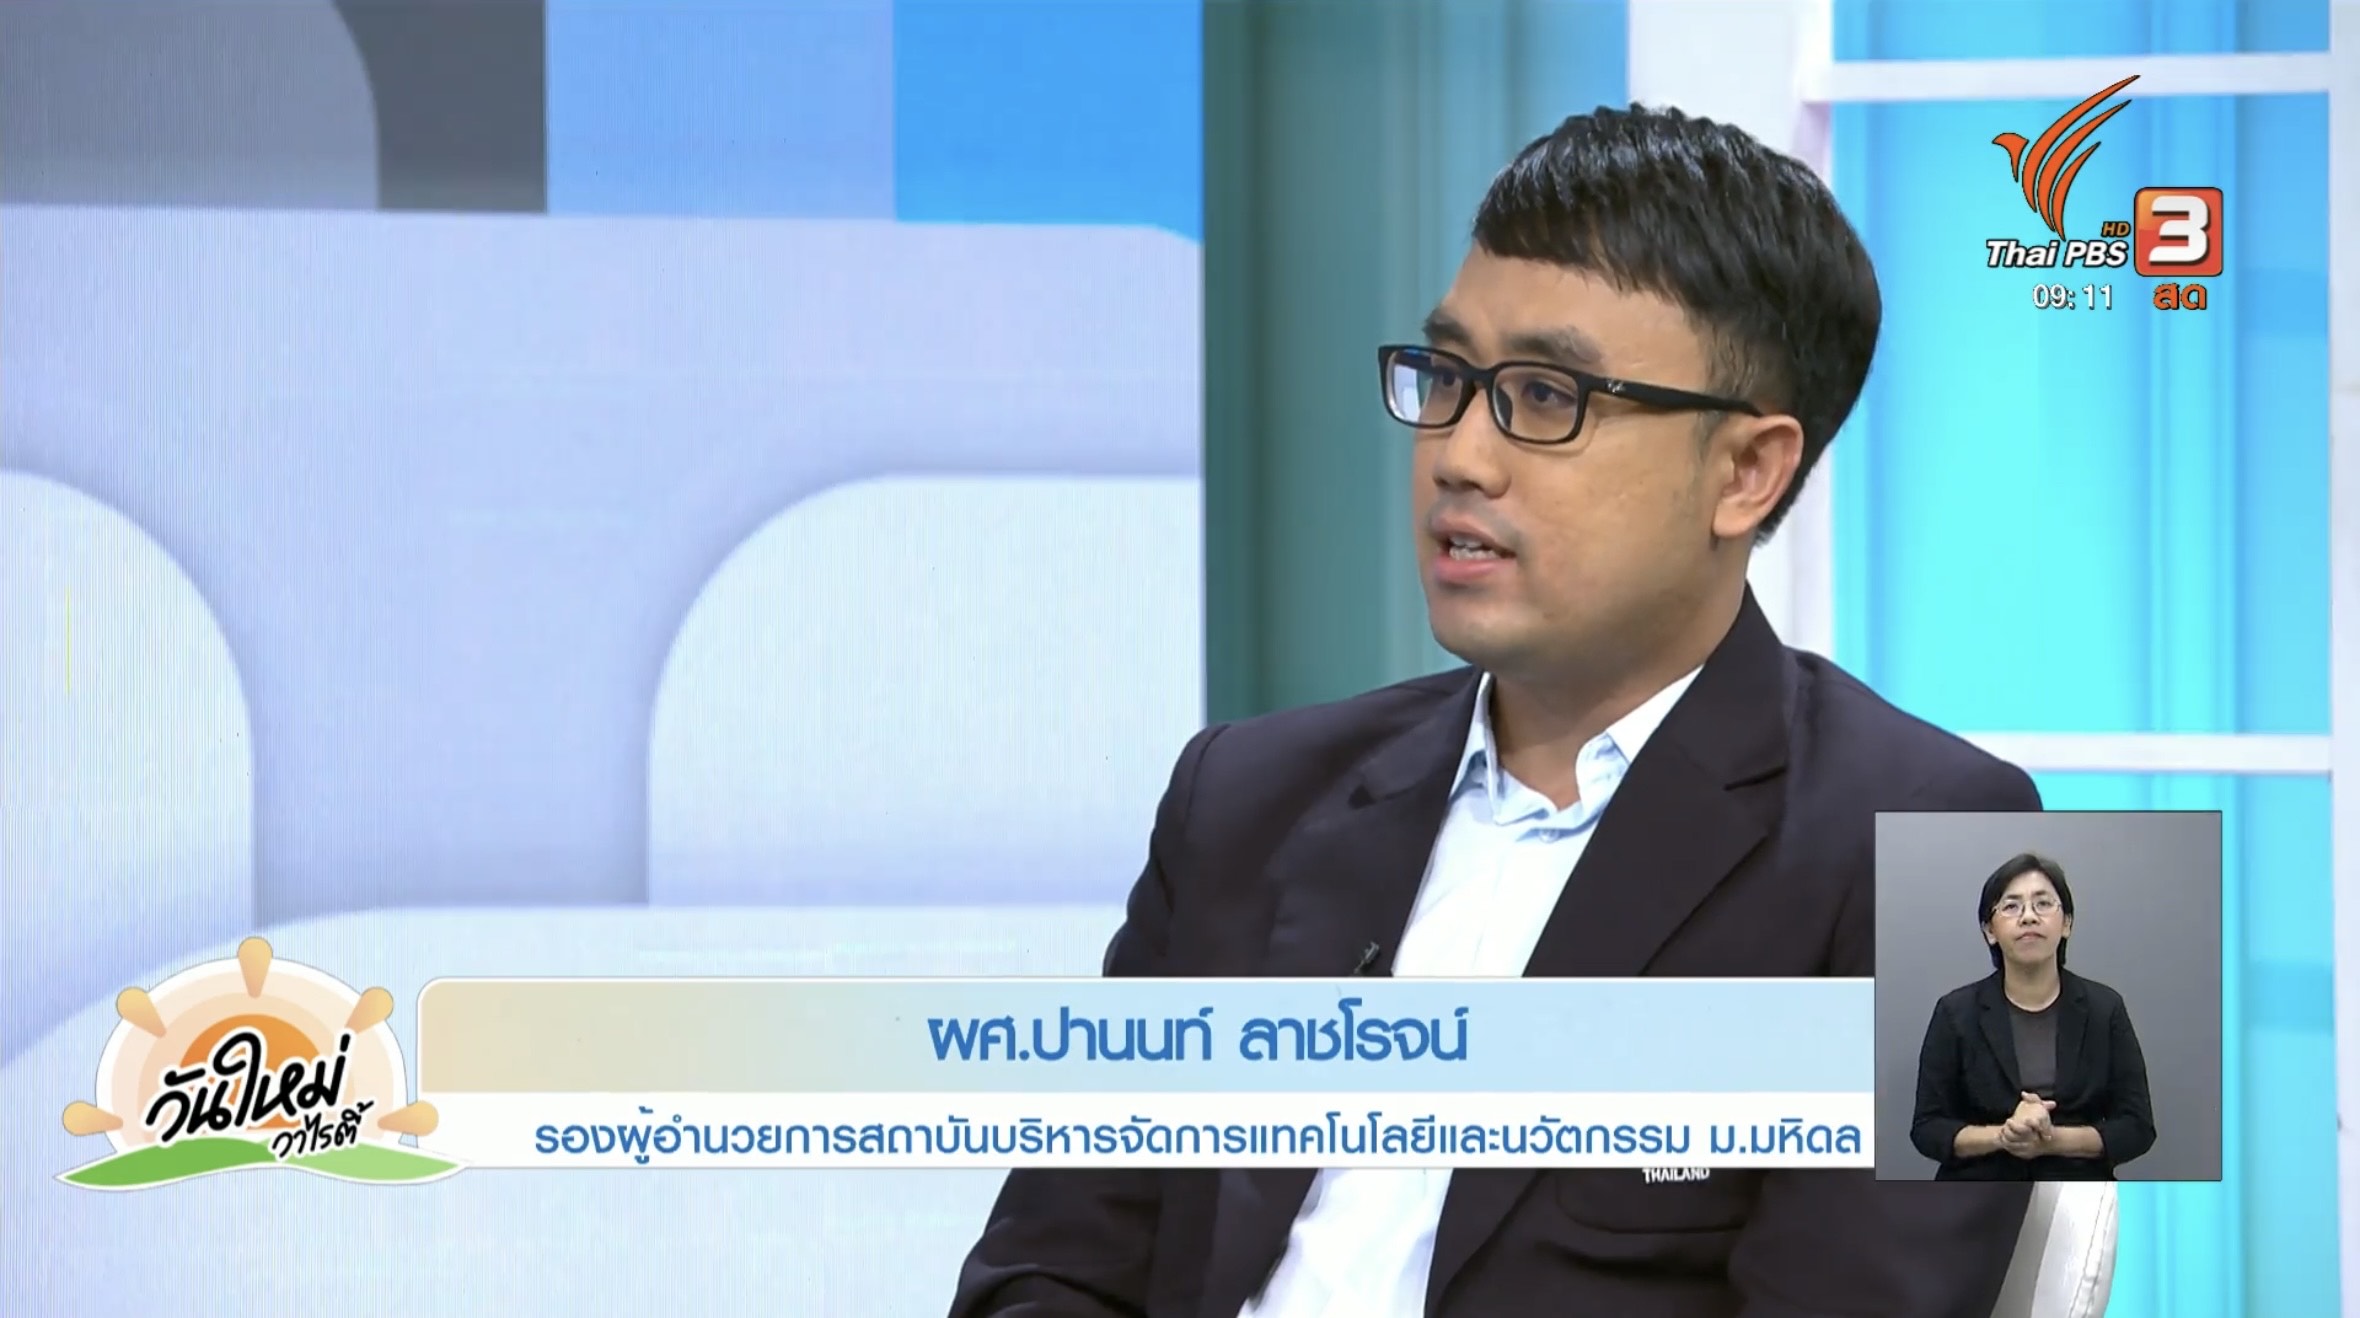 ผศ.ดร. ปานนท์ ลาชโรจน์รองผอ. iNT ร่วมรายการช่อง Thai PBS